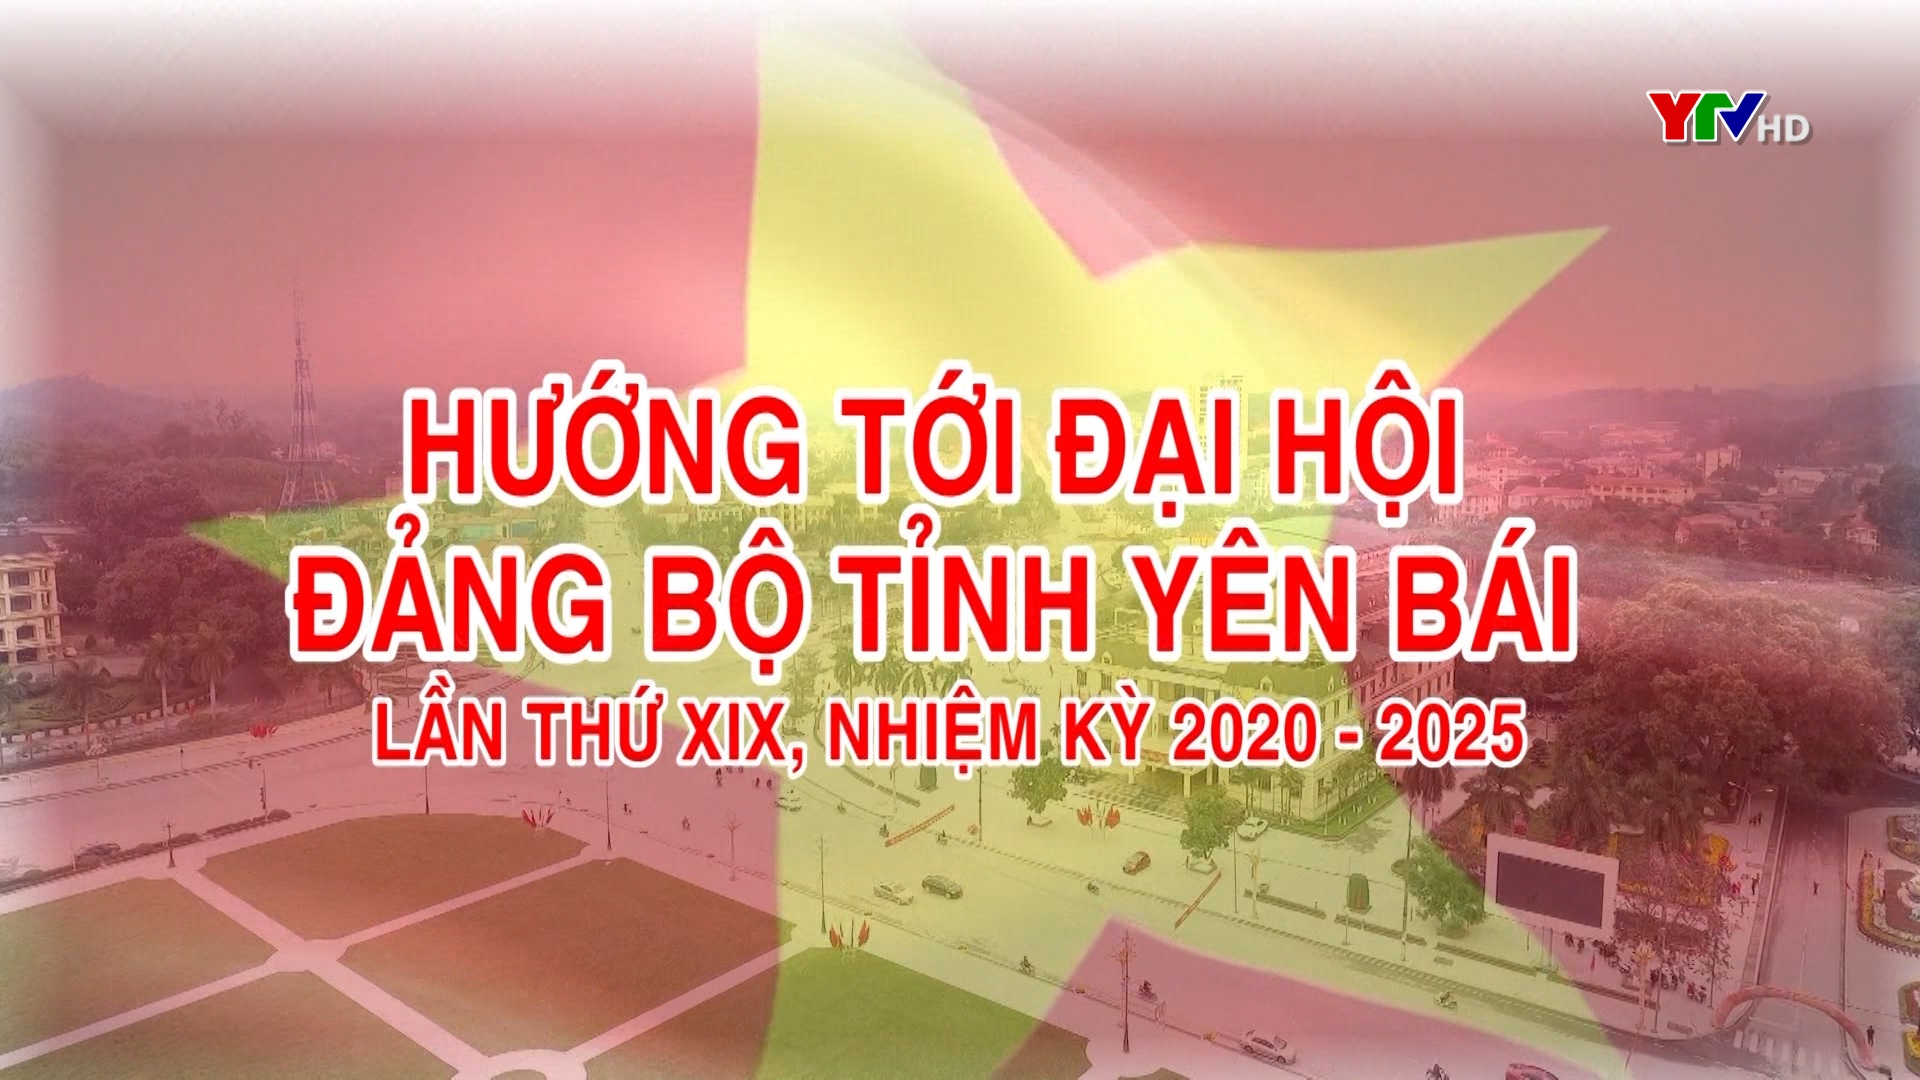 Người dân xã Y Can, huyện Trấn Yên đóng góp ý kiến vào Dự thảo Báo cáo chính trị trình Đại hội XIX, Đảng bộ tỉnh Yên Bái